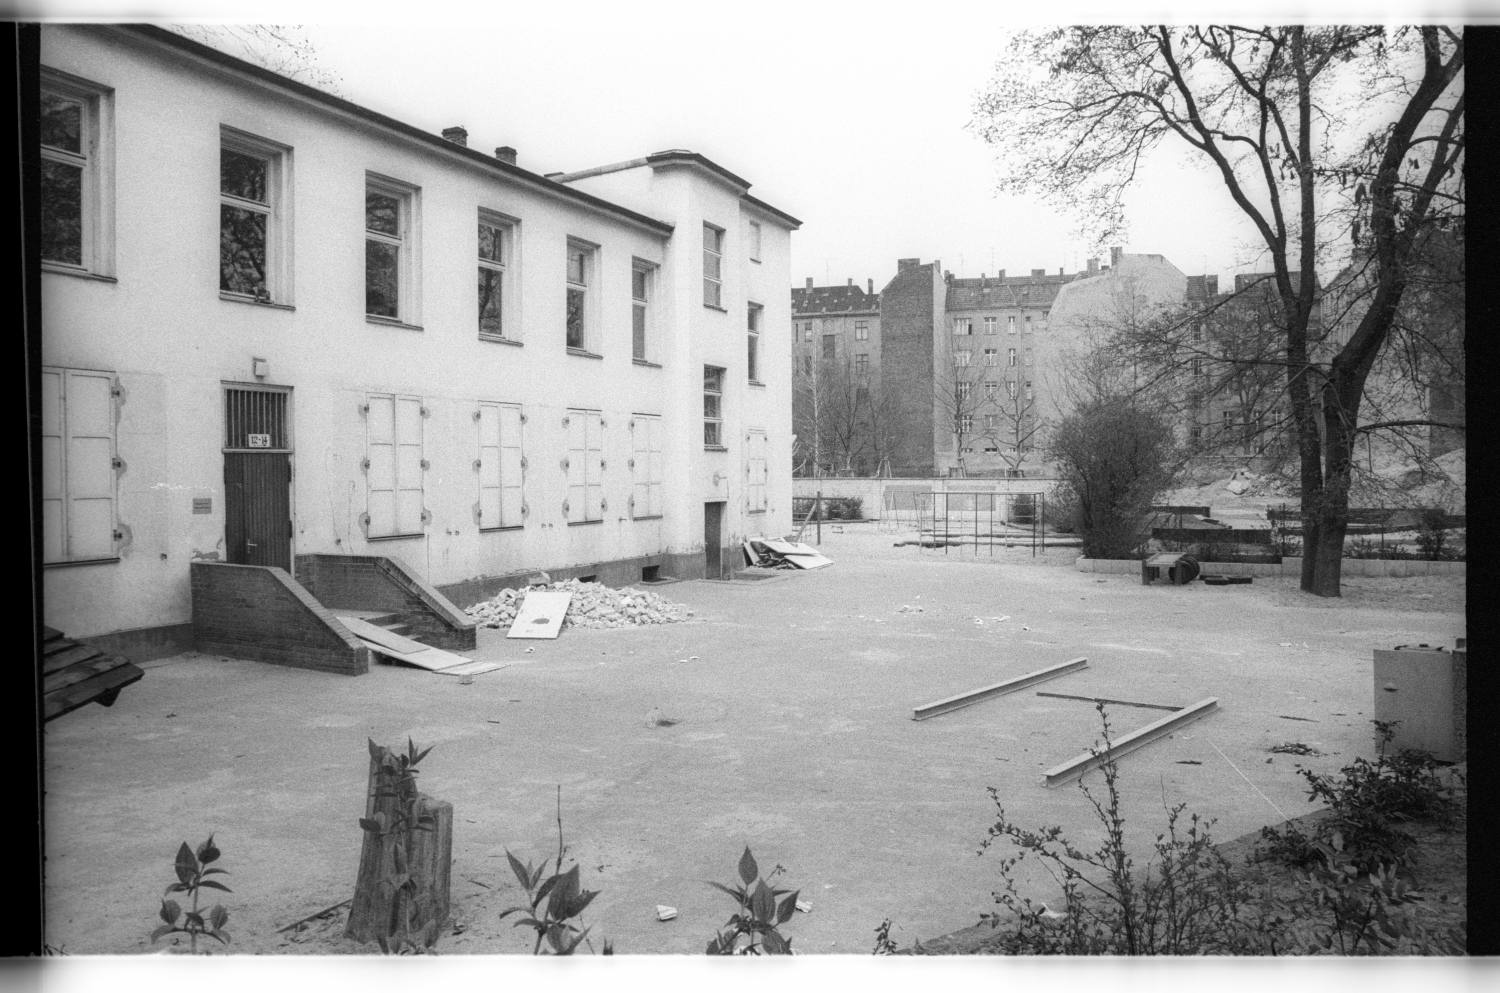 Kleinbildnegative: Baustelle, Freizeitgelände, Belziger Straße, 1979 (Museen Tempelhof-Schöneberg/Jürgen Henschel RR-F)